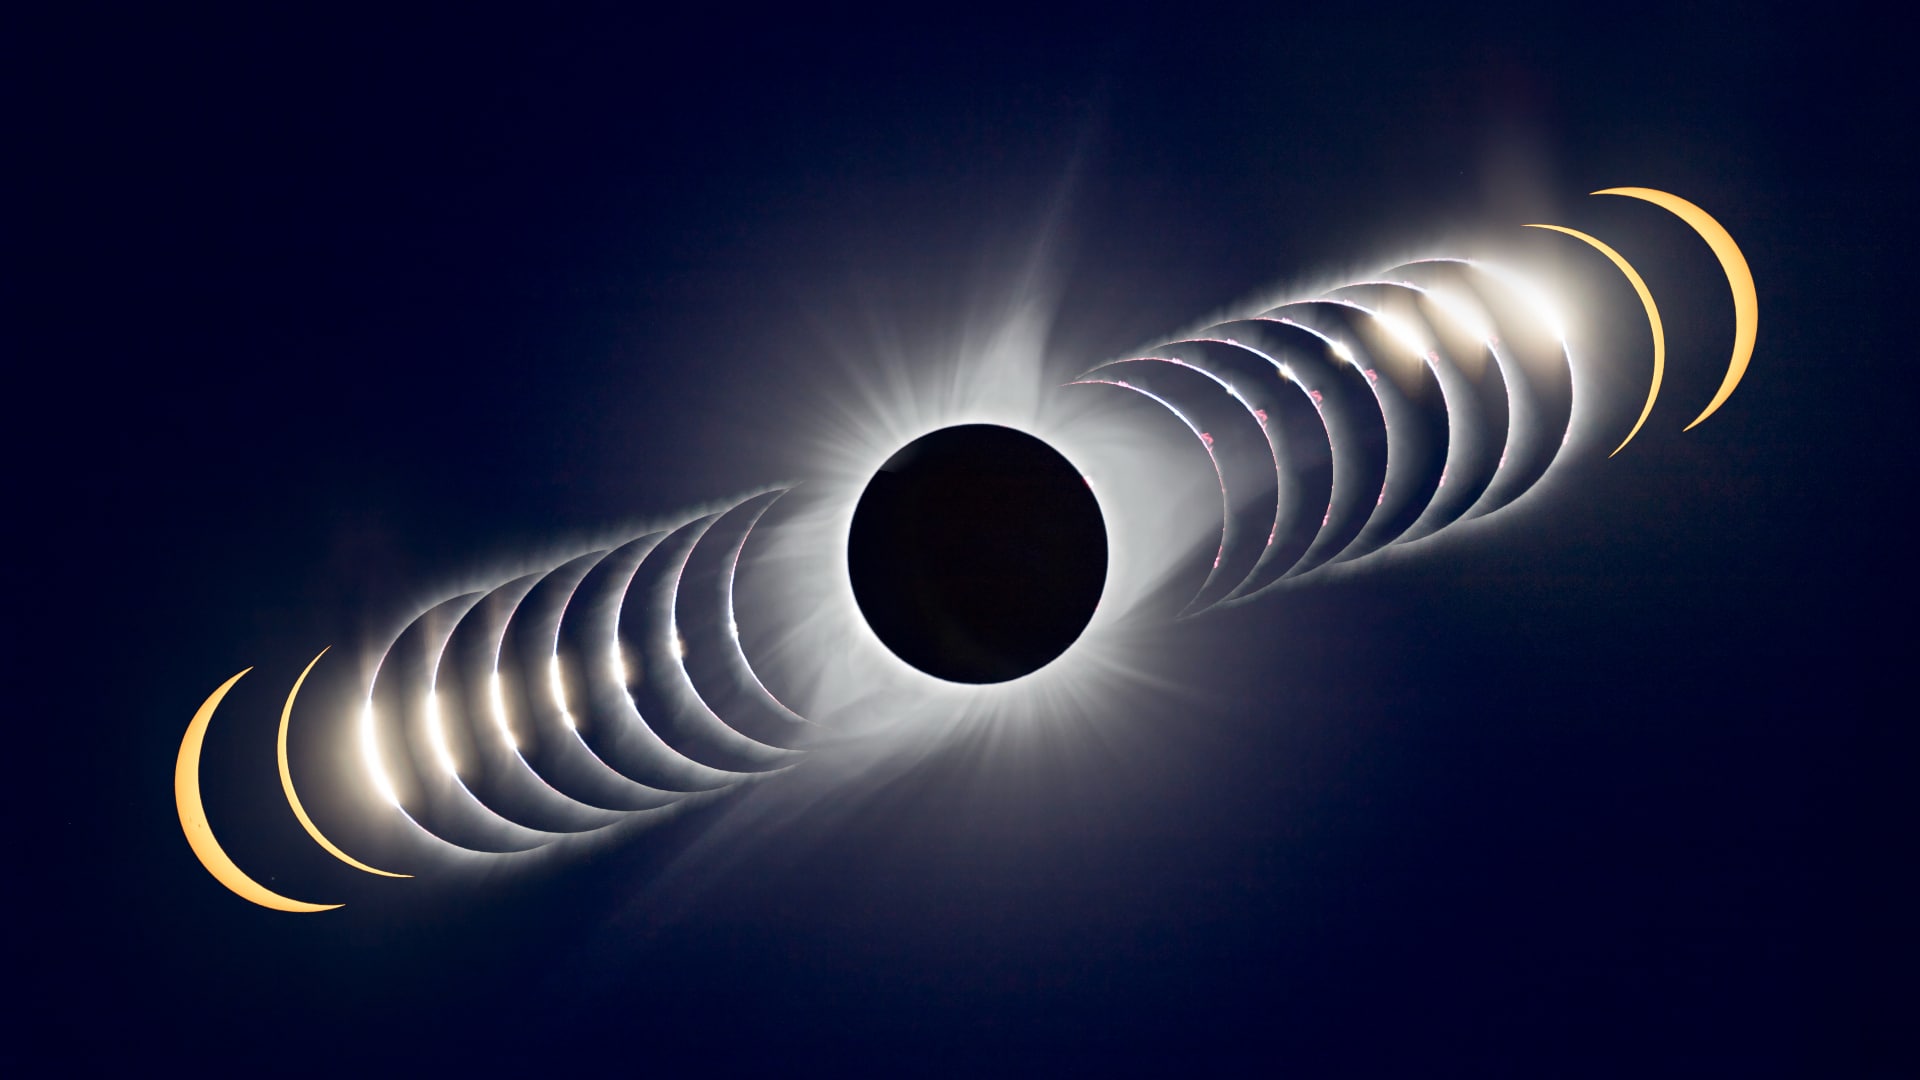 Eclissi solare ibrida